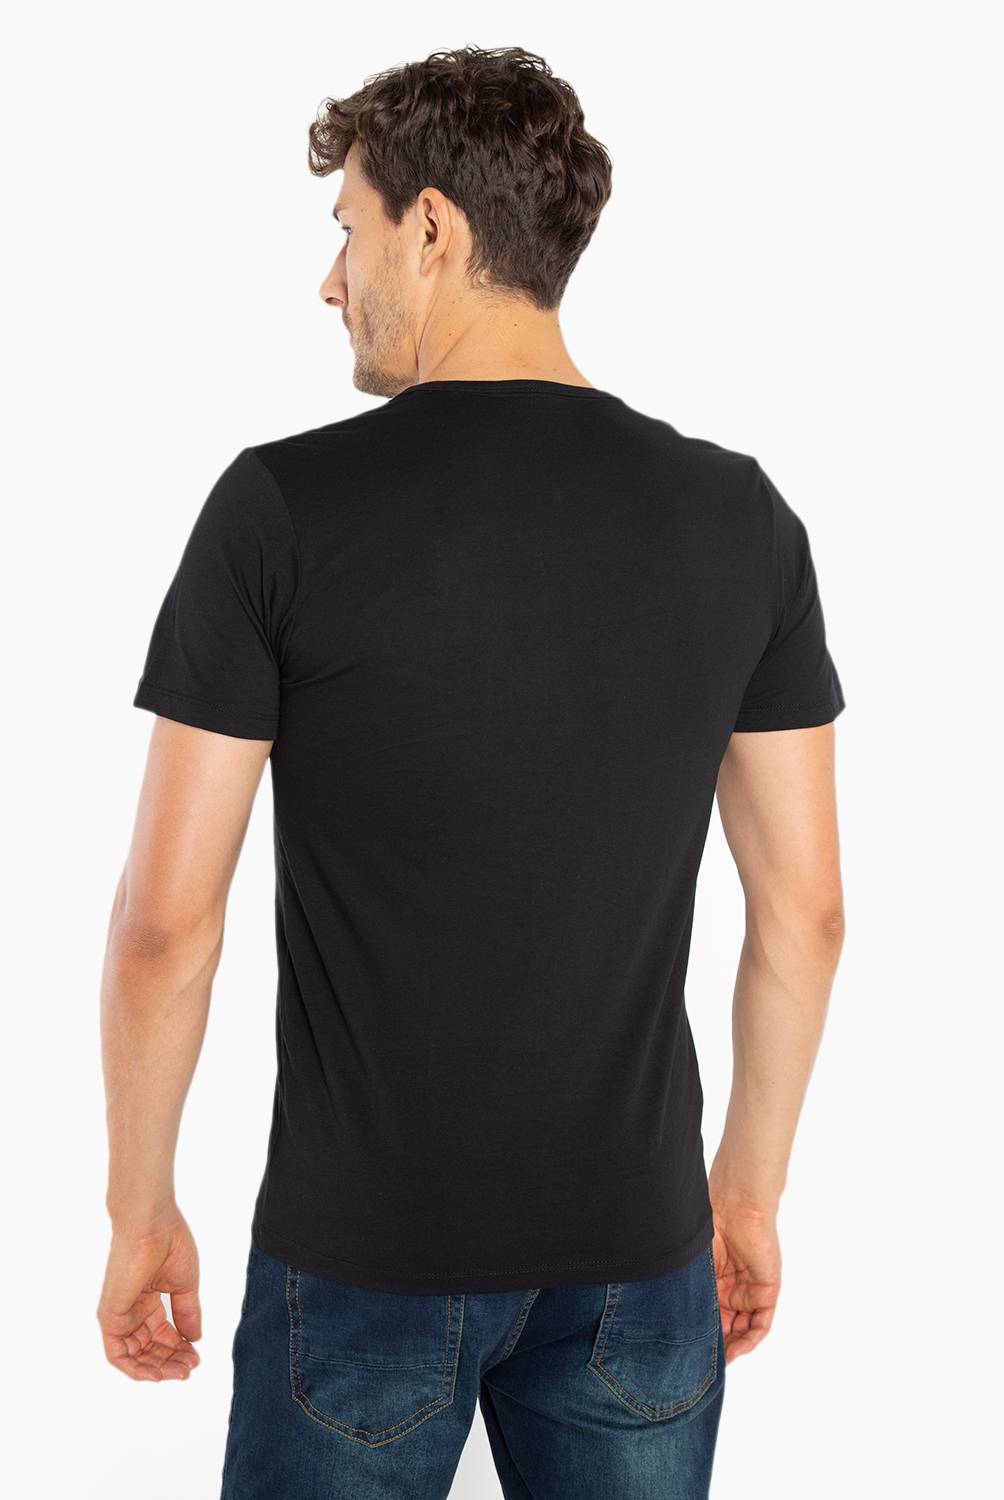 BASEMENT - Basement Camiseta Hombre Algodón